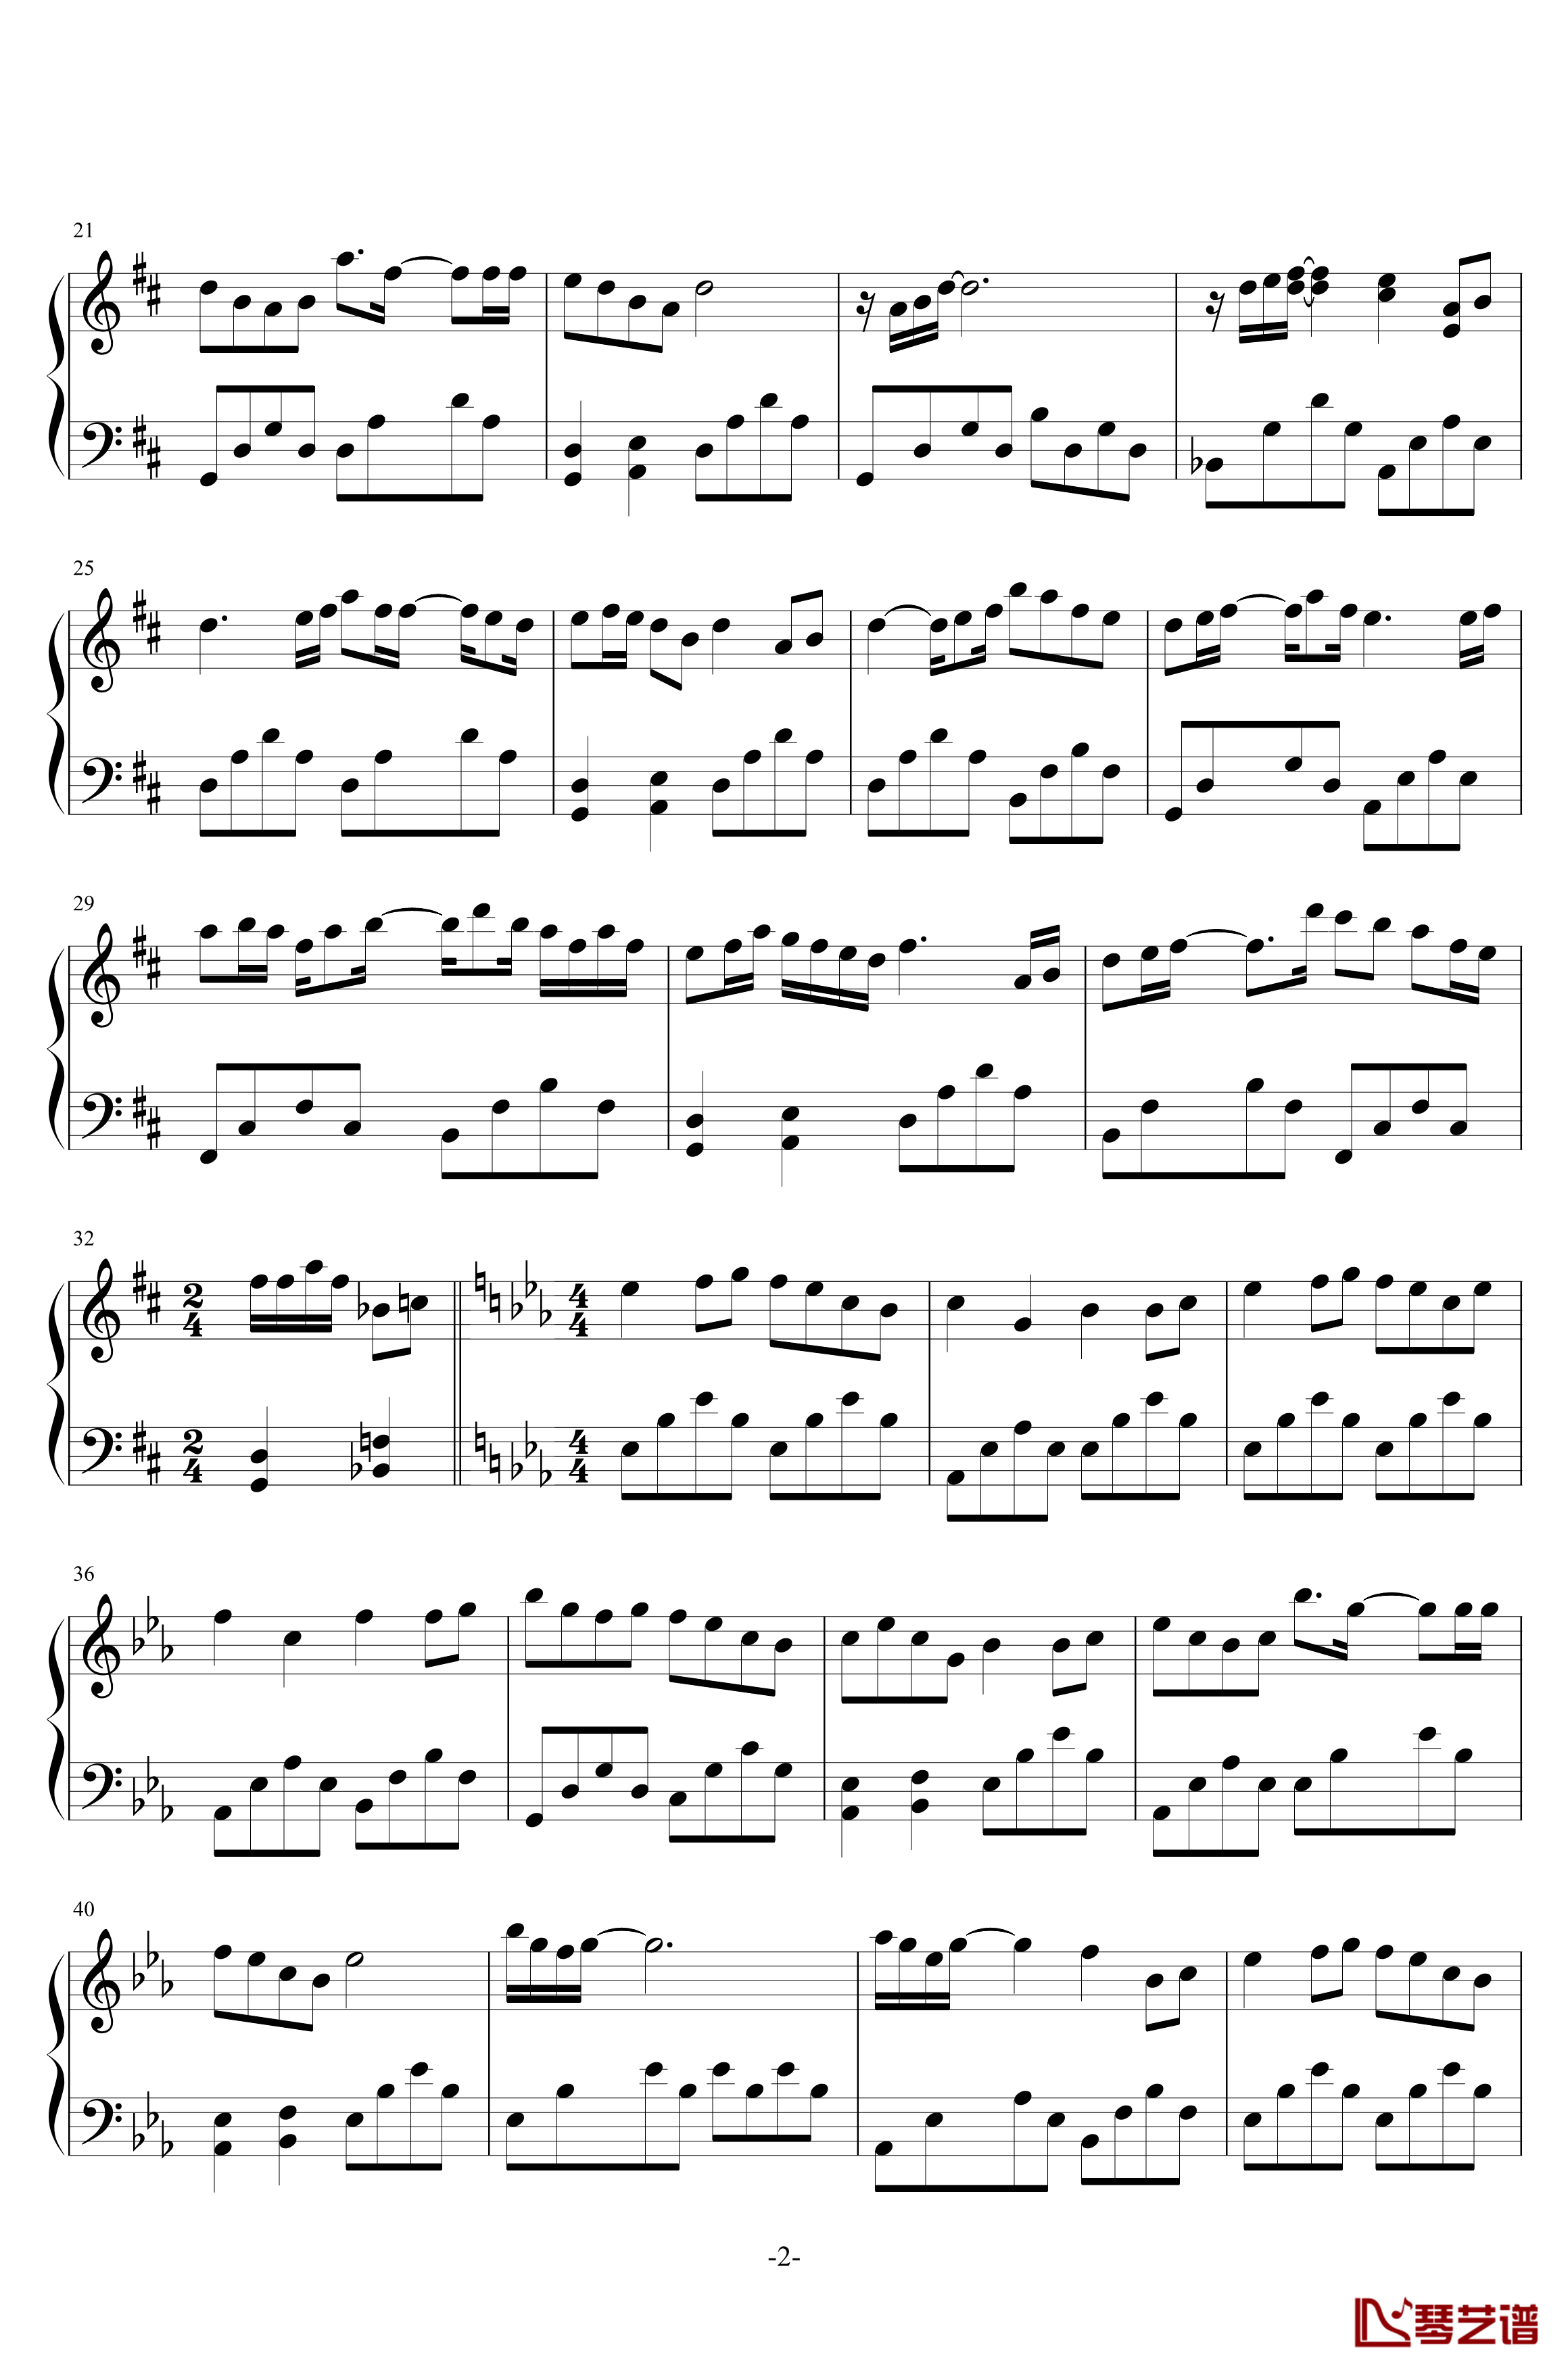 极乐歌钢琴谱-1.0完美版-柯佩磊